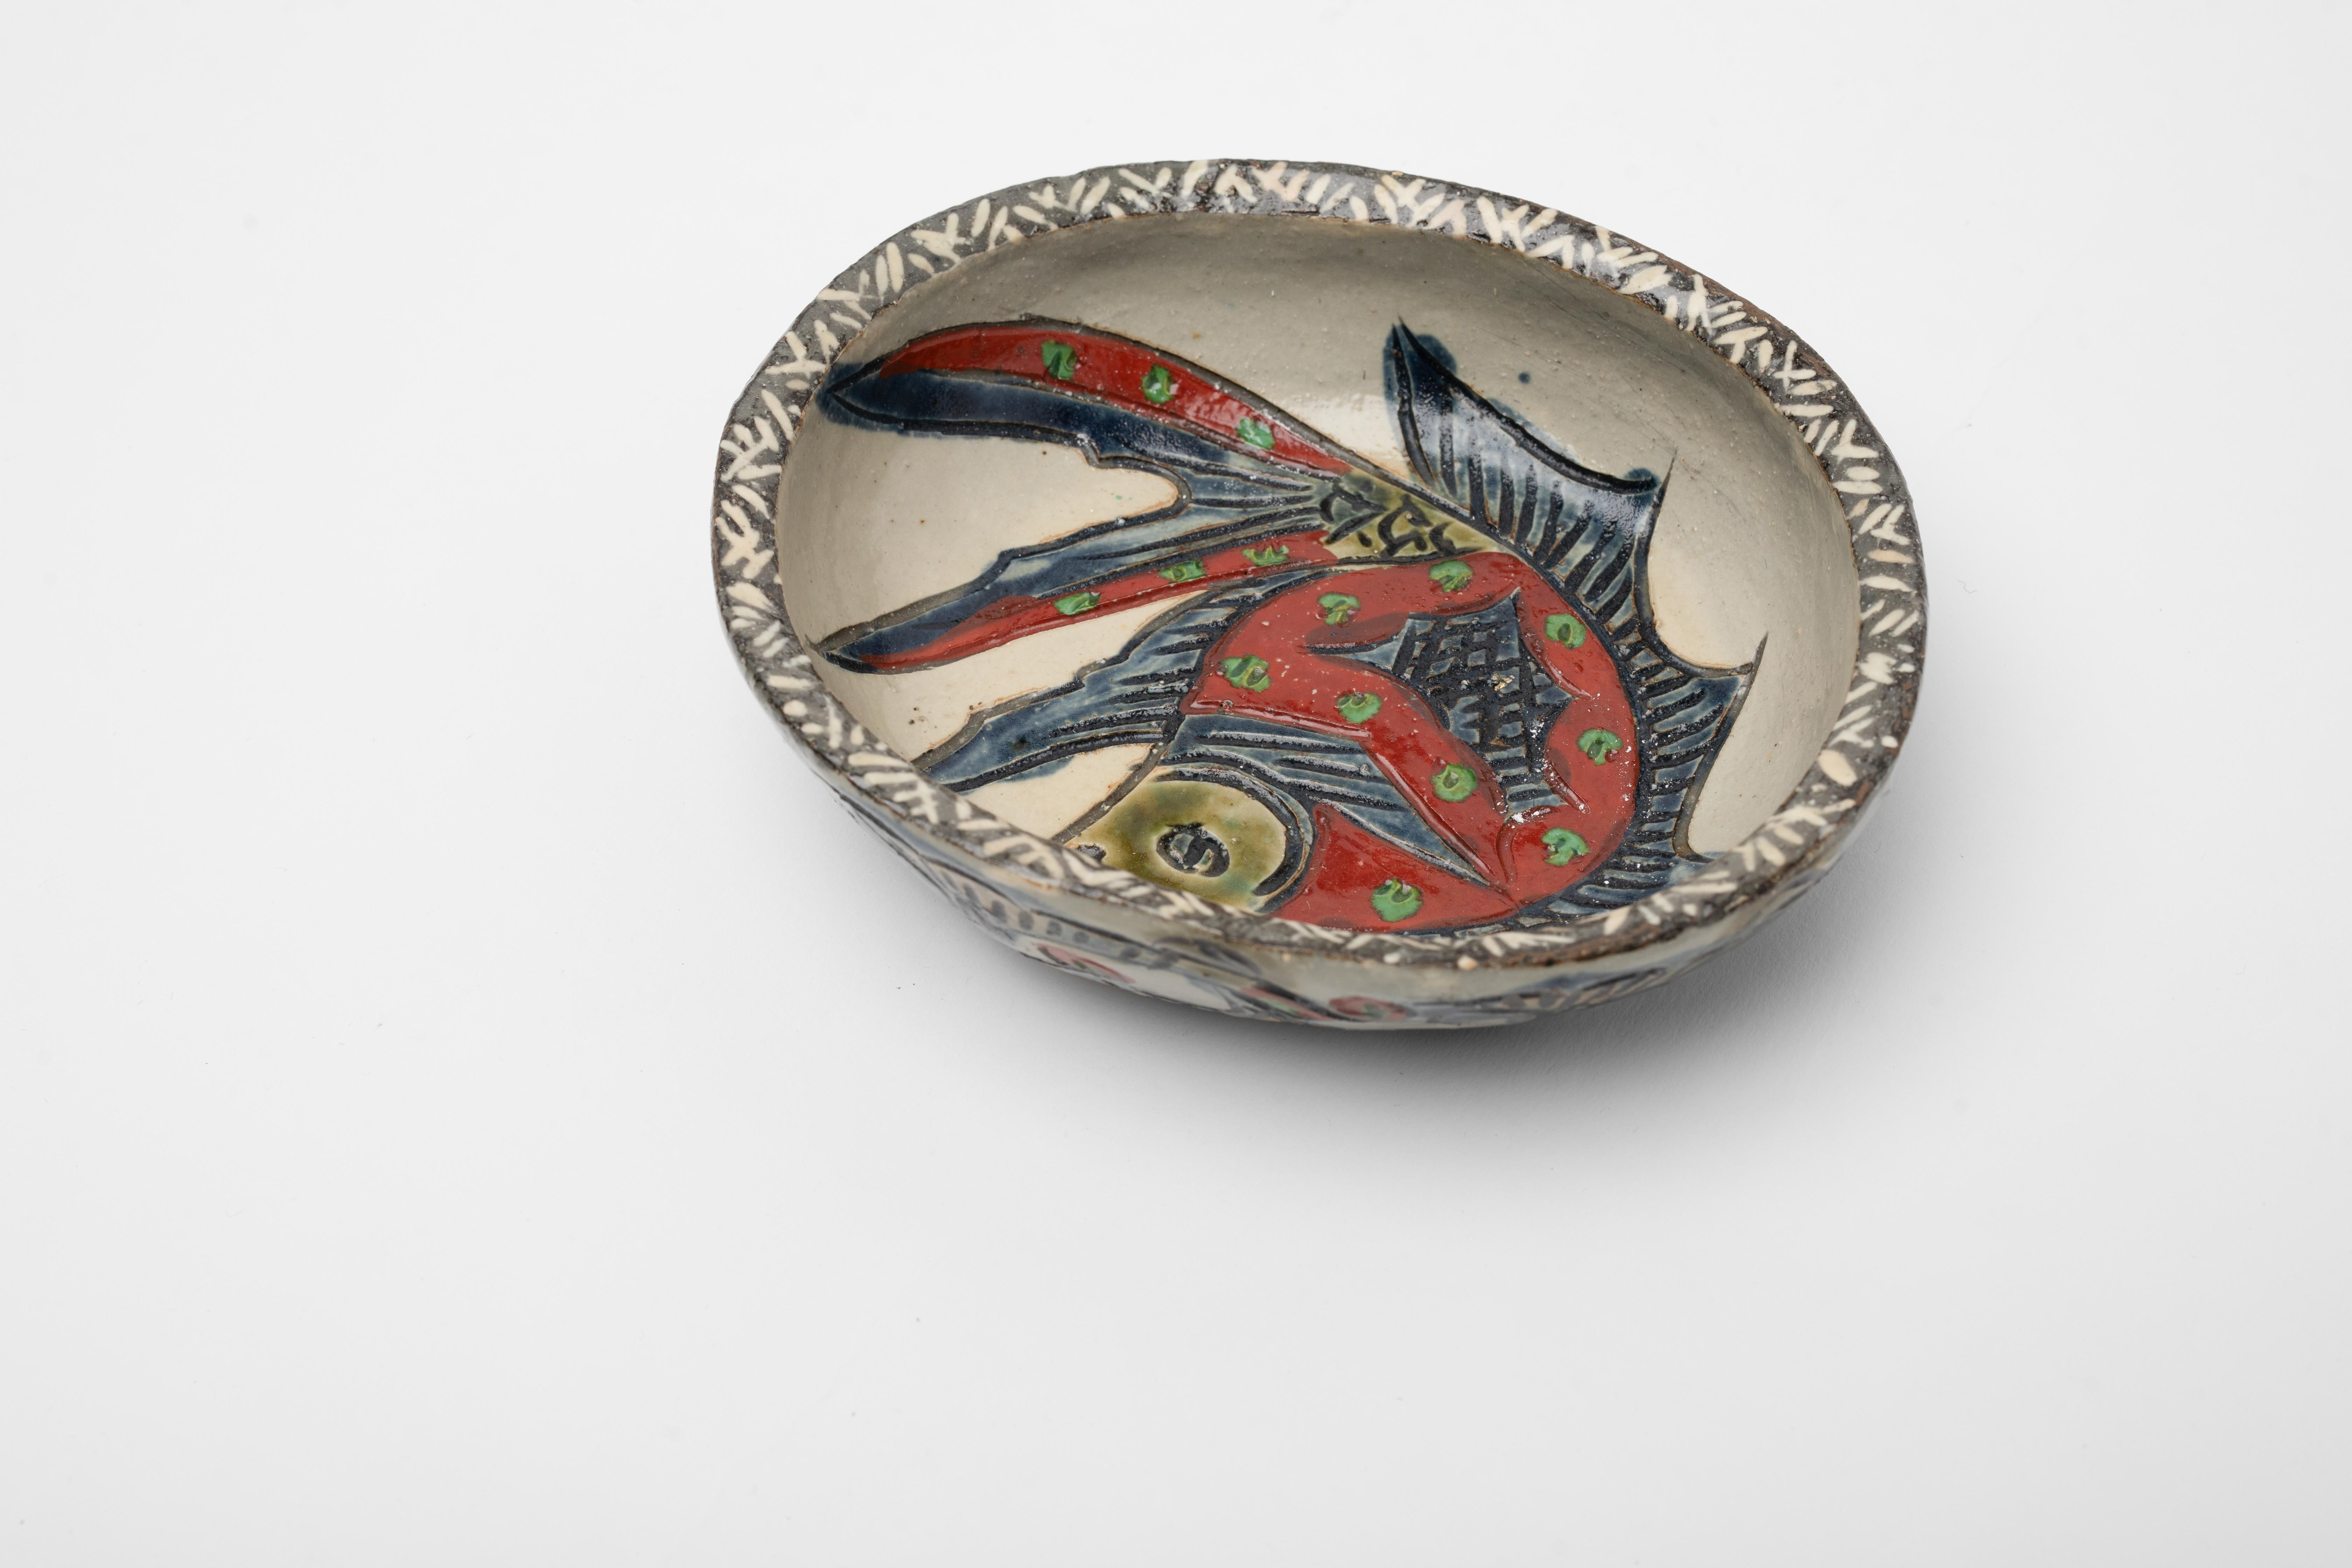 Incroyable pièce de Tsuboya-yaki ou Tsuboya ware qui provient de la région d'Okinawa au Japon. Probablement de la période Taisho (1912-1926), qui a connu un regain de popularité pour les objets d'artisanat populaire de Tsuboya-yaki.

L'icône de